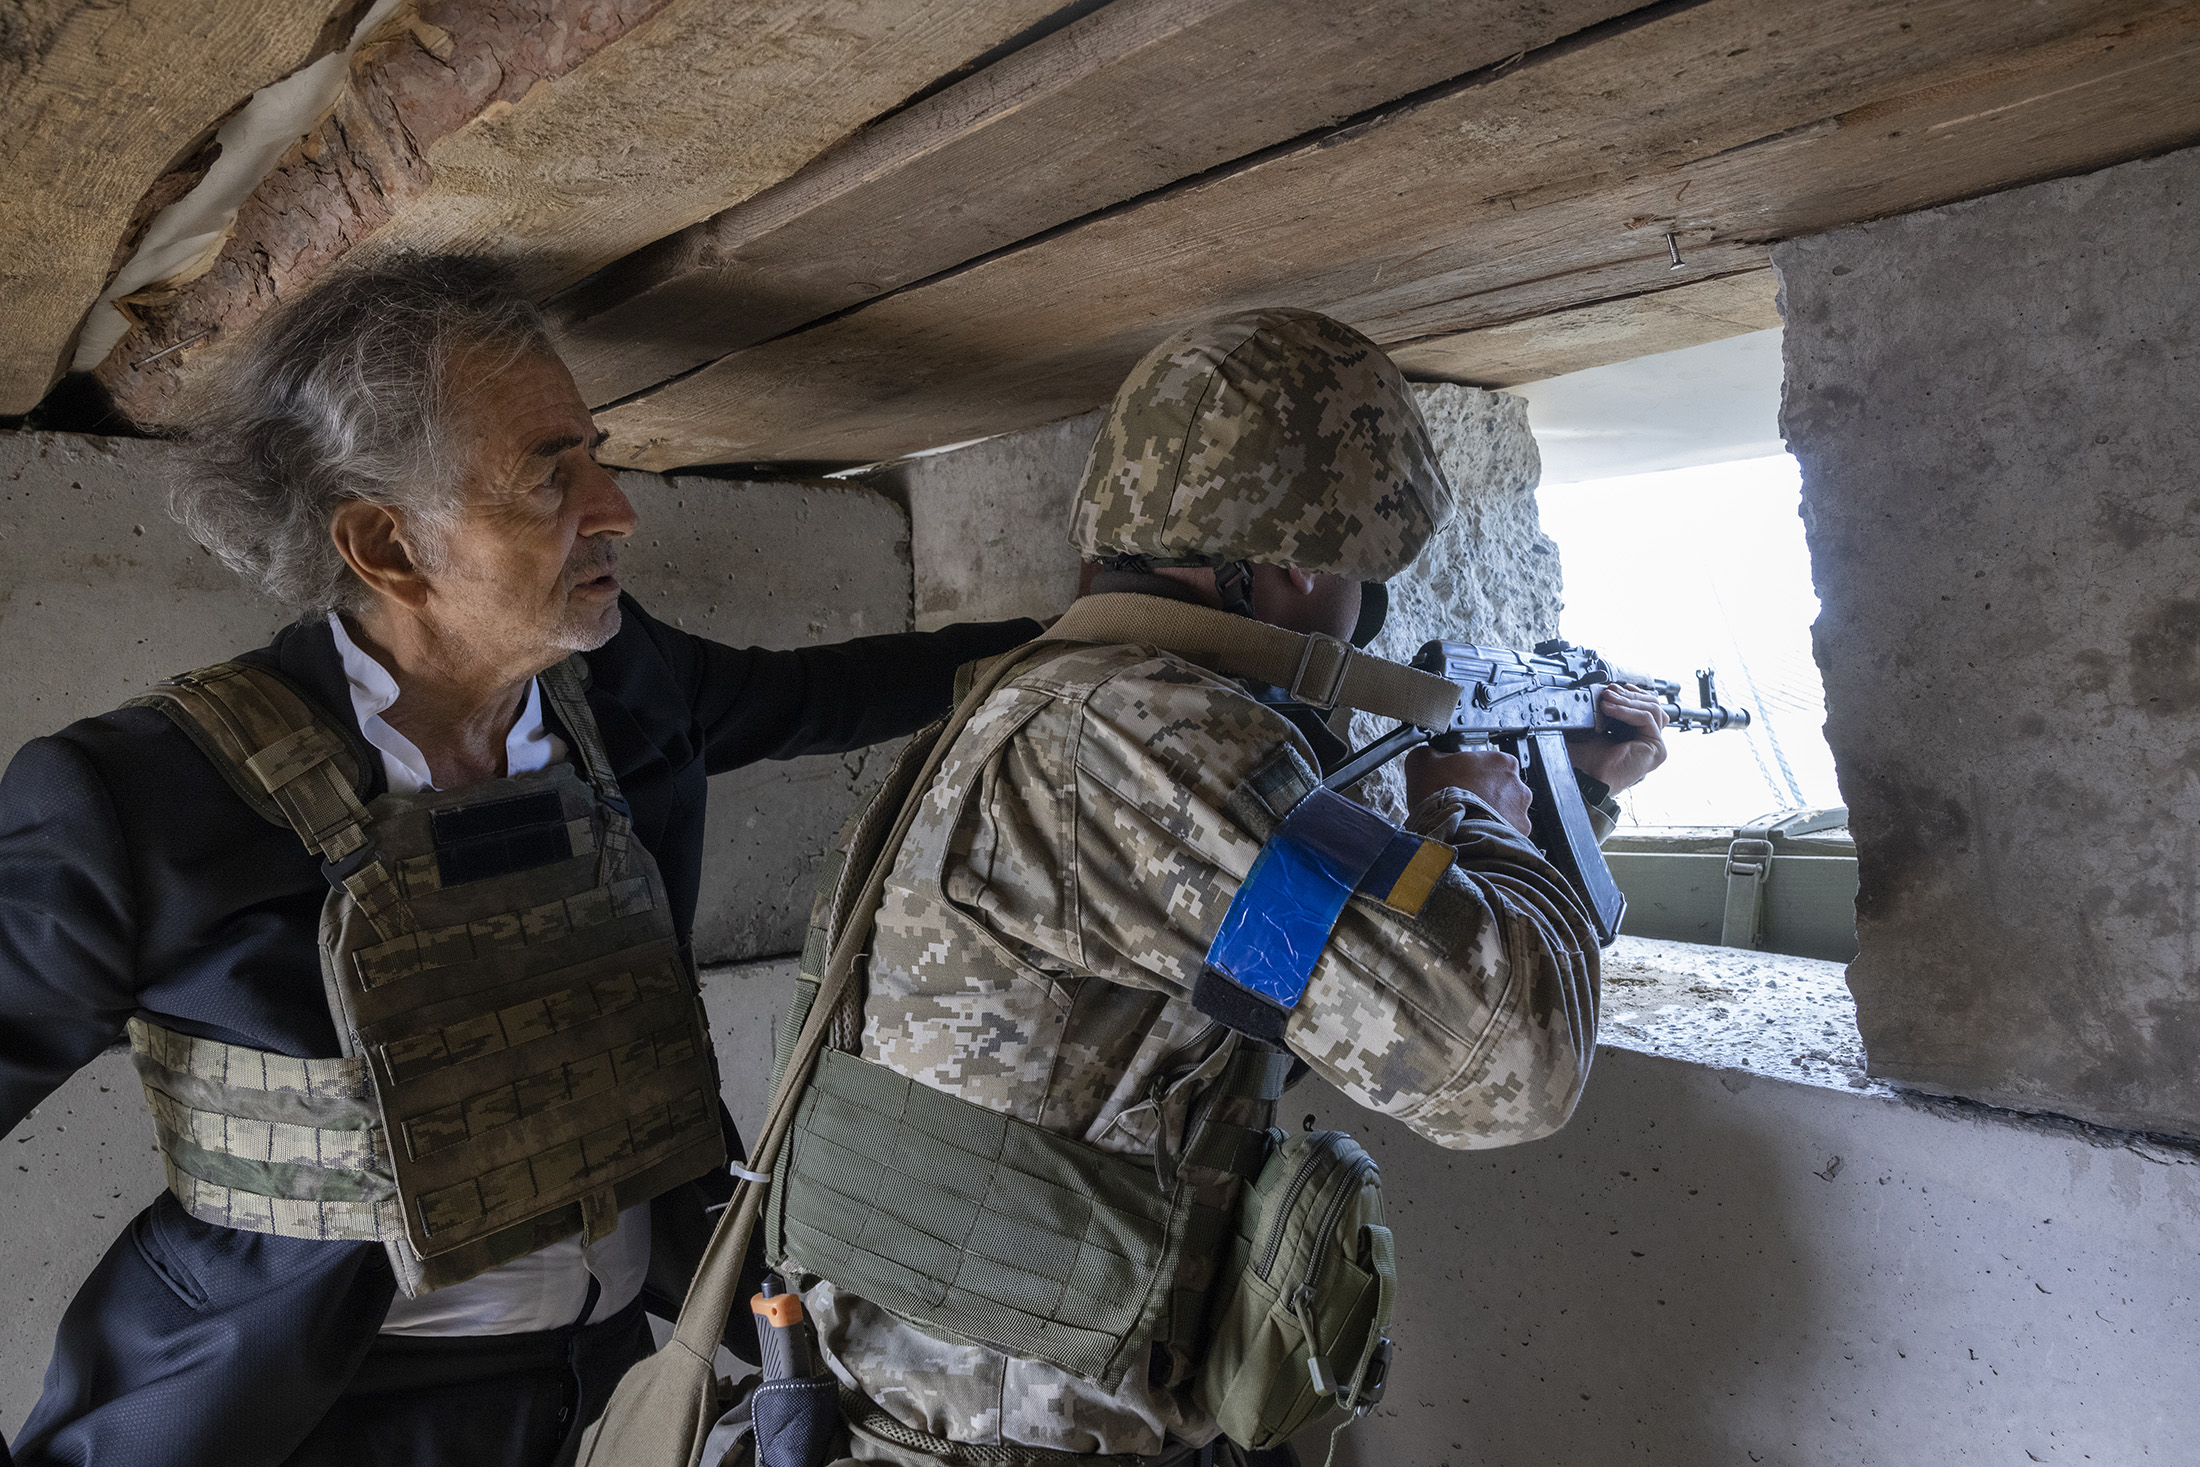 Bernard-Henri Lévy à Kharkiv, avec des militaires ukrainiens. BHL observe un militaire en train de tirer avec une arme.